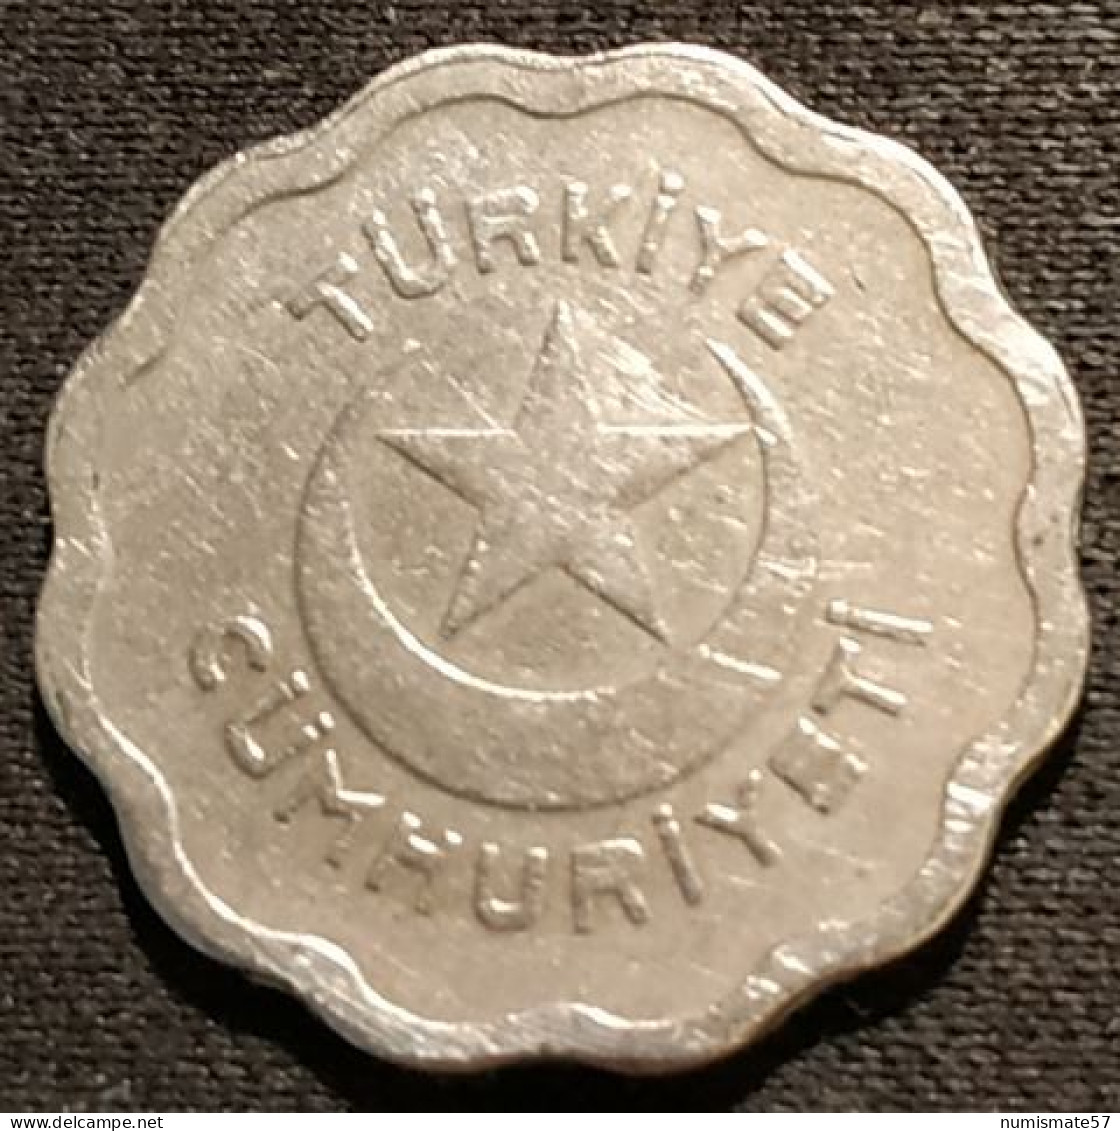 TURQUIE - TURKEY - 1 KURUS 1939 - KM 867 - Turquie